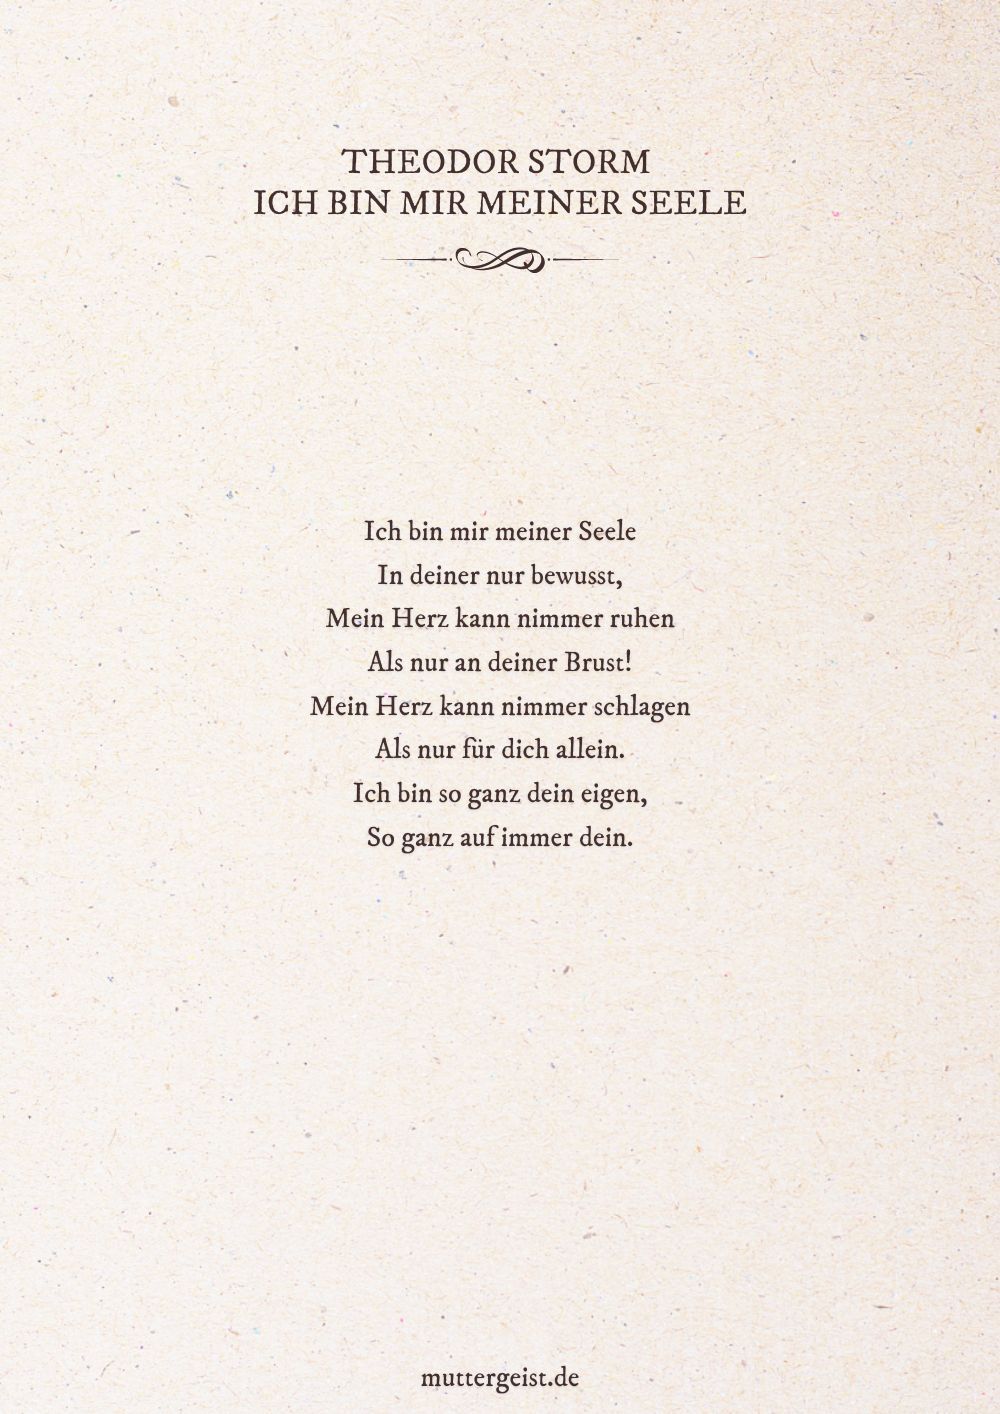 Liebesgedicht von Theodor Storm